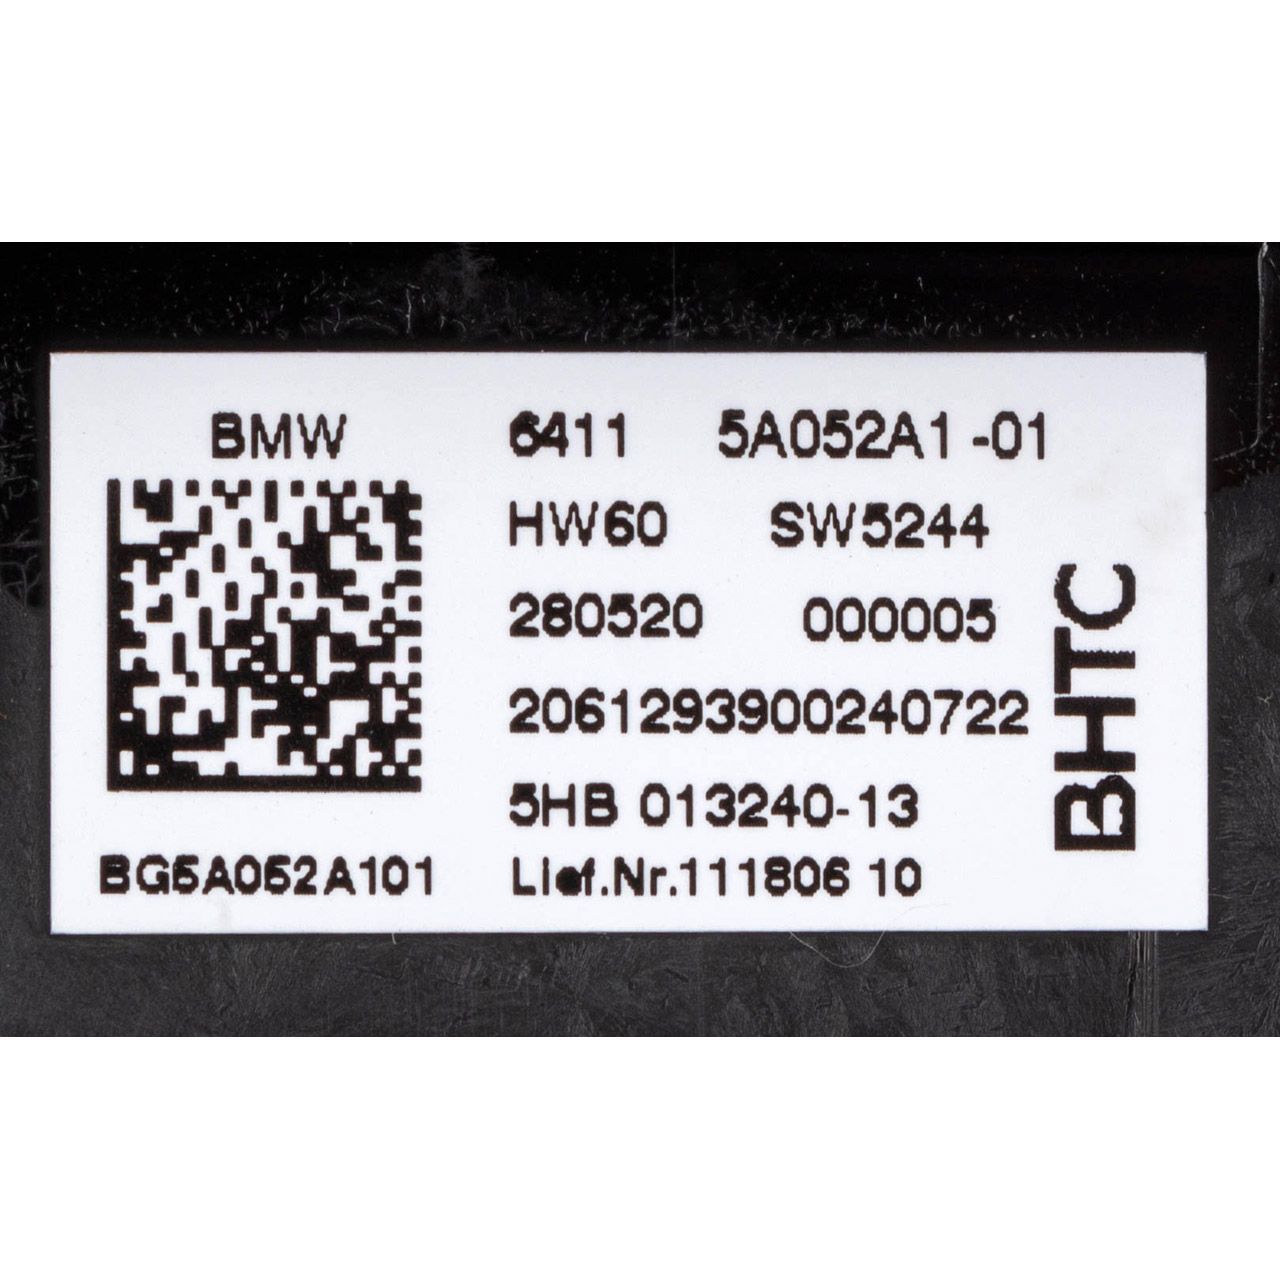 Schalter Tasten Bedienelement Klimaanlage Bedienteil für BMW 8er M8 G15 F92 64115A052A1